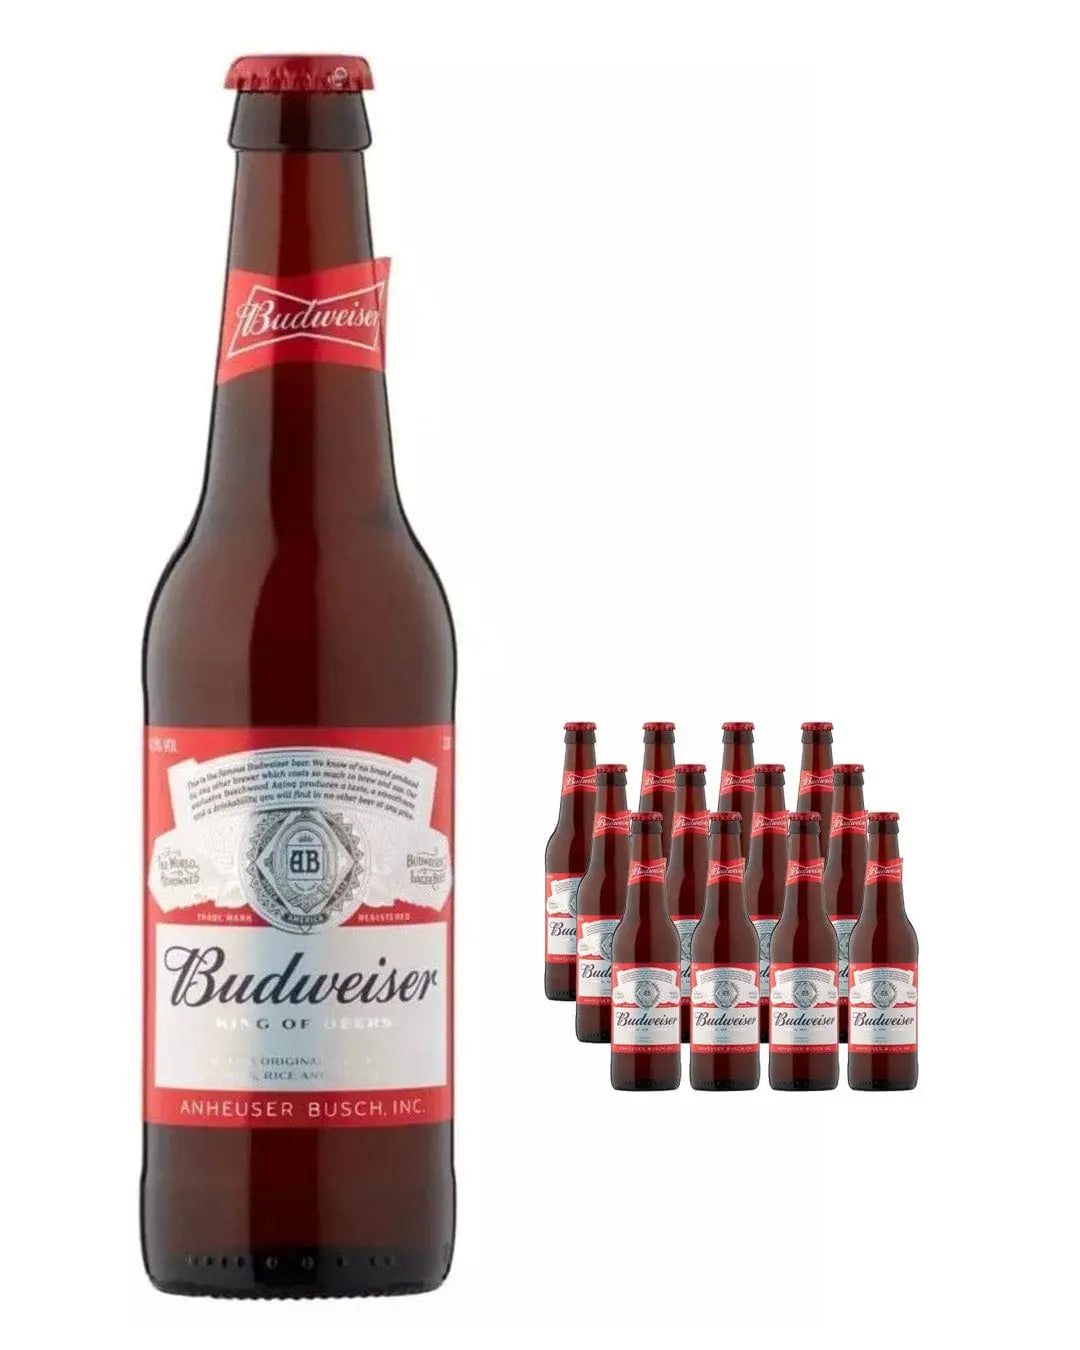 Budweiser Premium Lager Bottle Multipack, 12 x 300 ml Beer